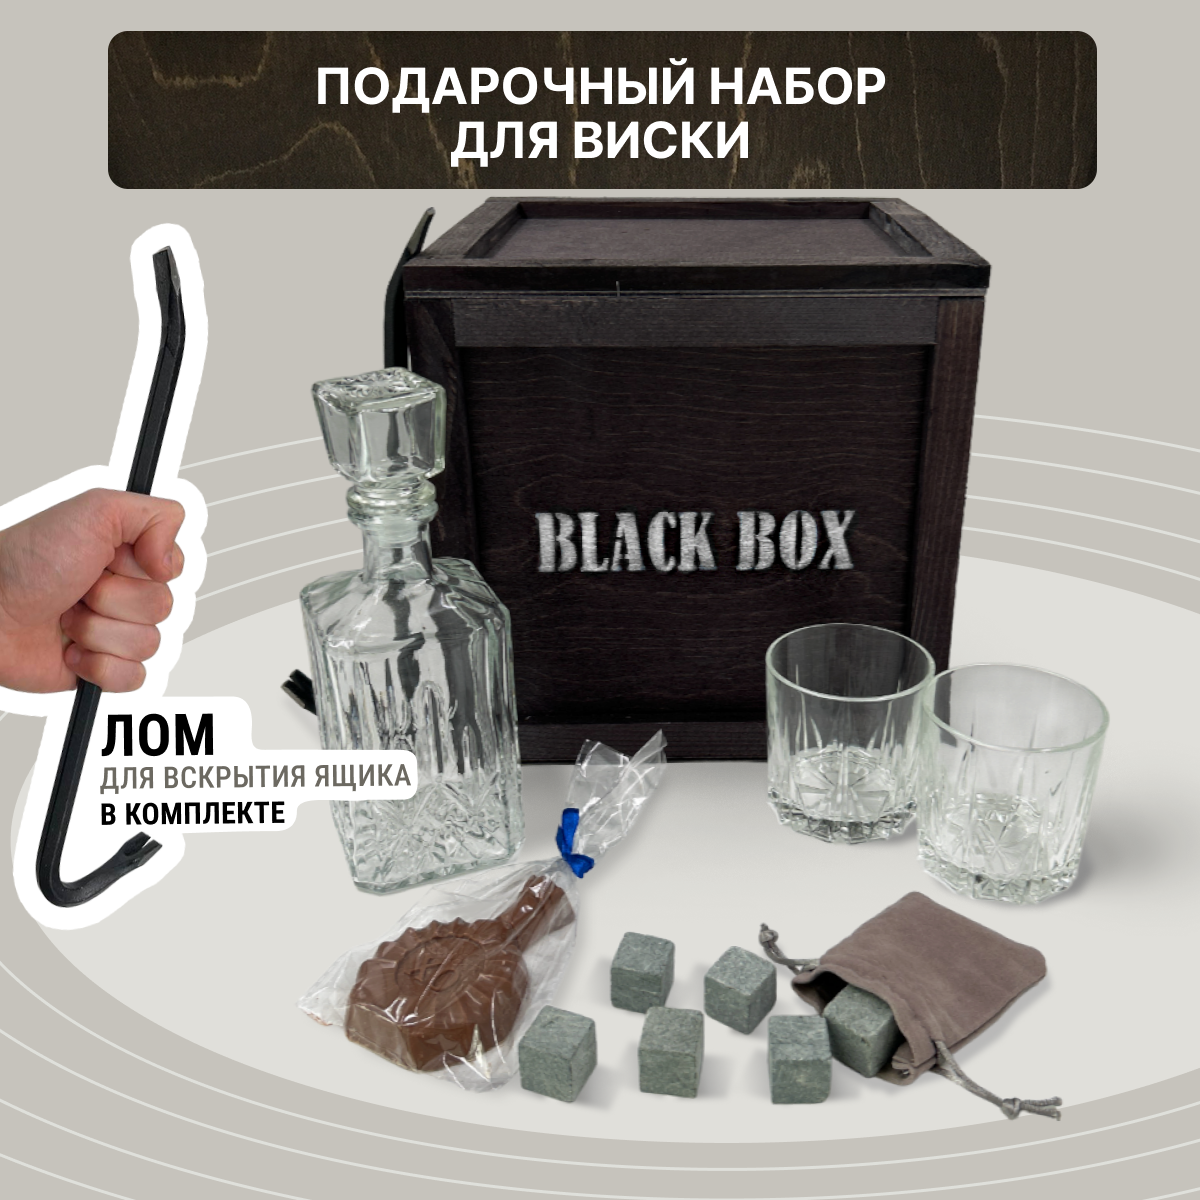 Подарочный набор Black Box "Крепкий" / Подарок мужчине в деревянном ящике с ломом / Набор для крепких напитков / Мужской бокс